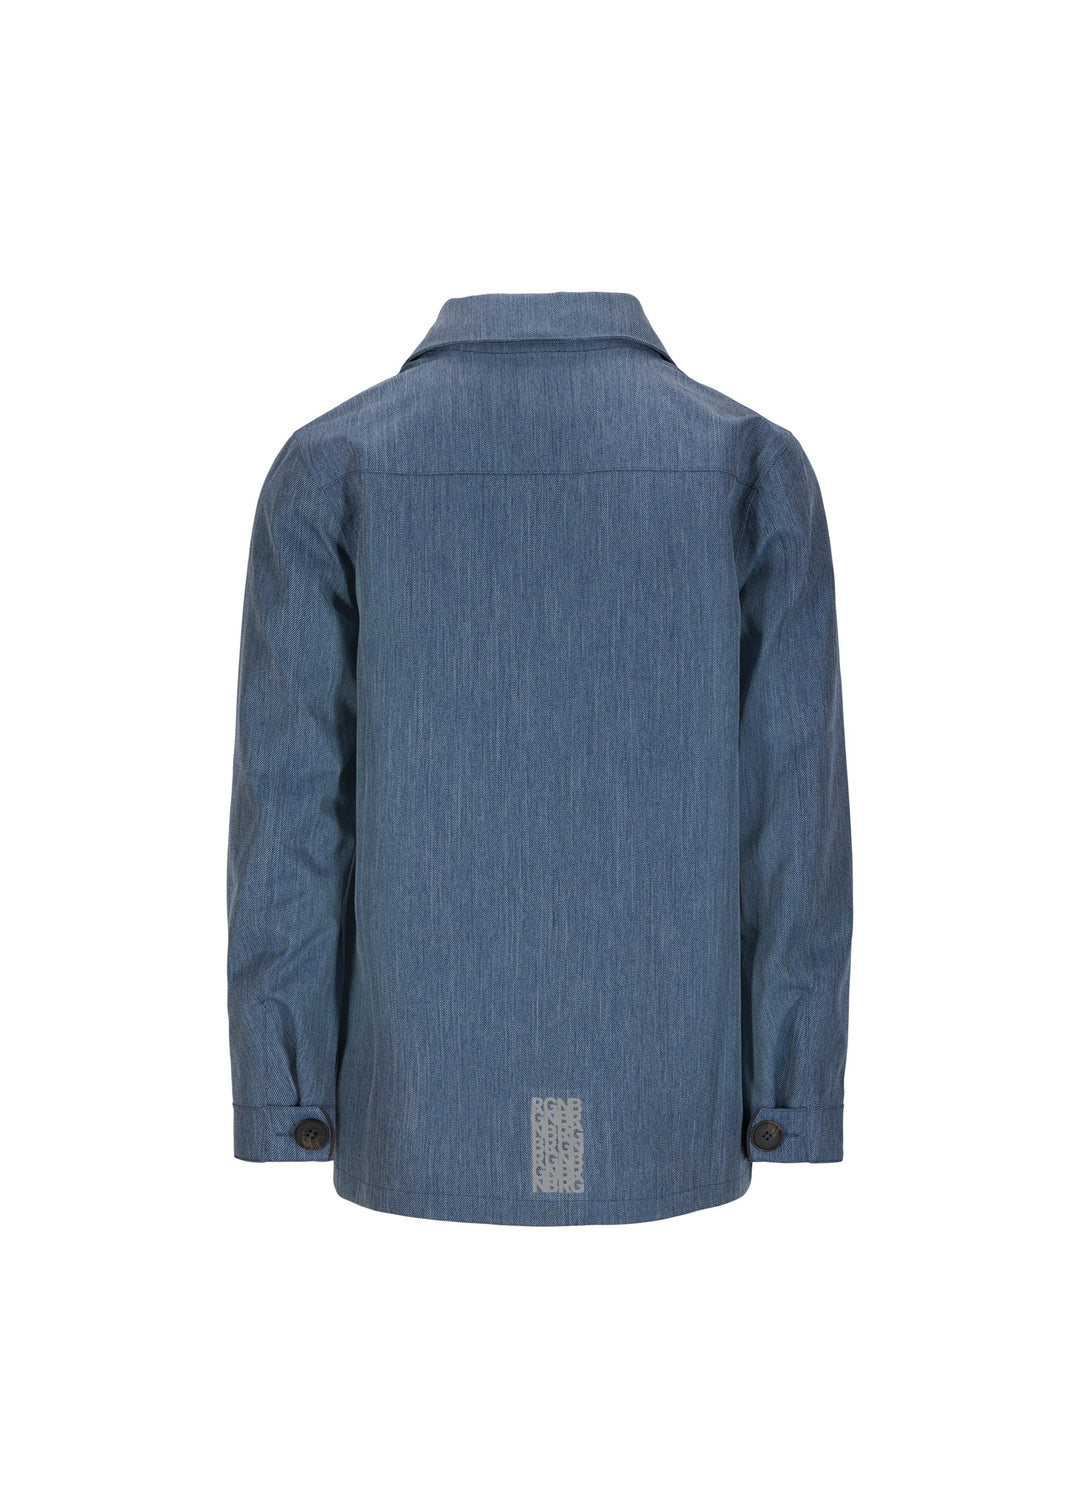 BRGN Syklon Overshirt Jacket Coats 735 Denim Blue